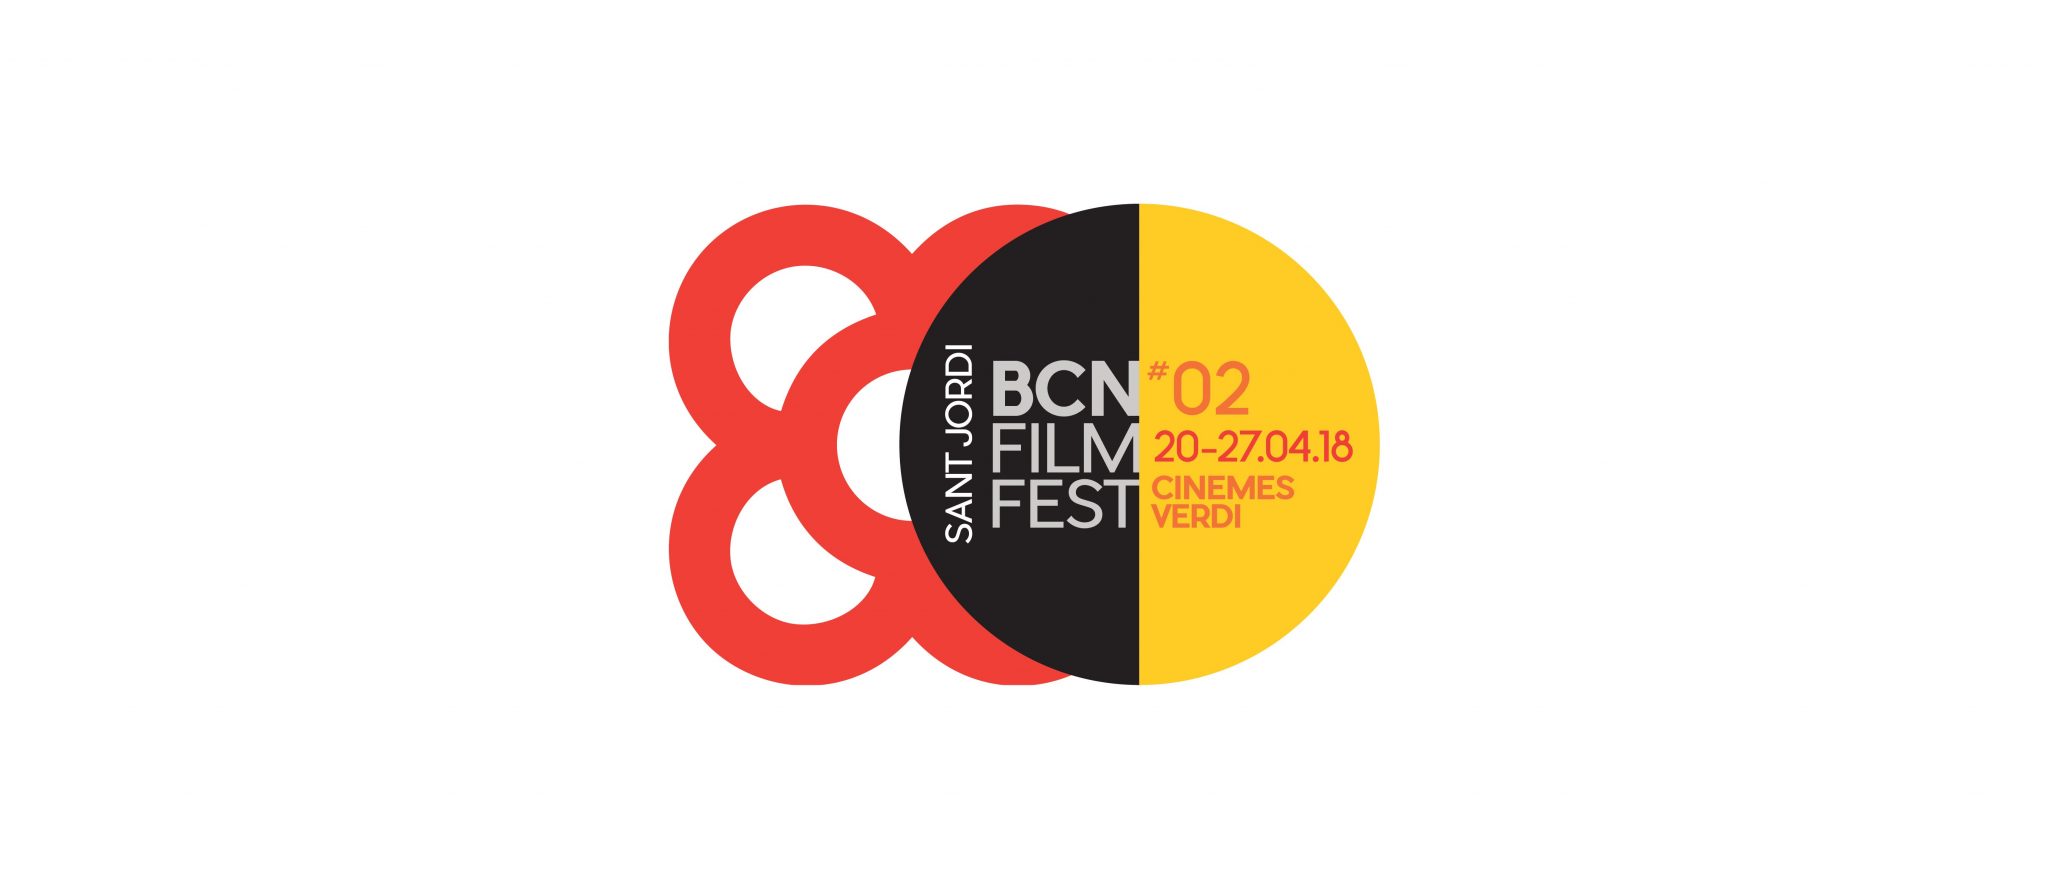 Palmarés del BCN Film Fest 2018